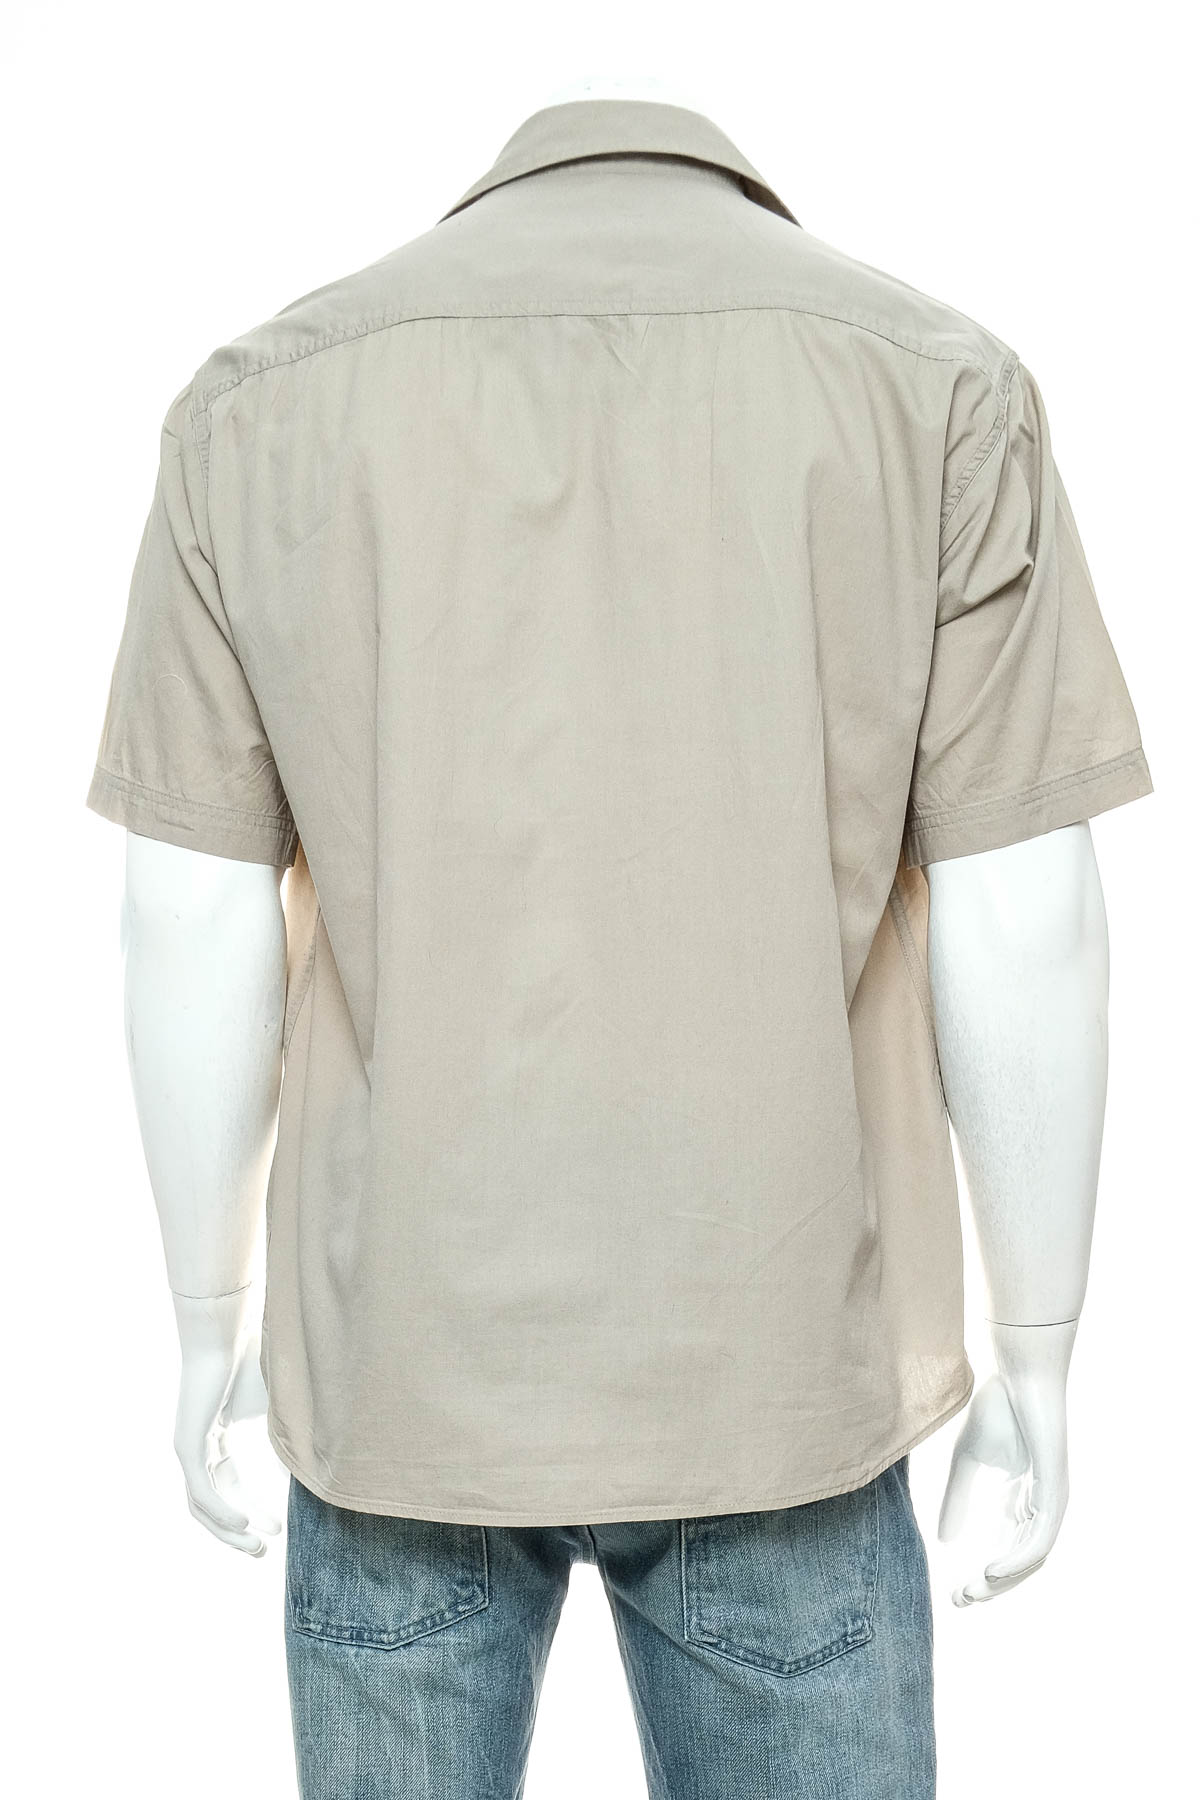 Ανδρικό πουκάμισο - Port Louis - 1